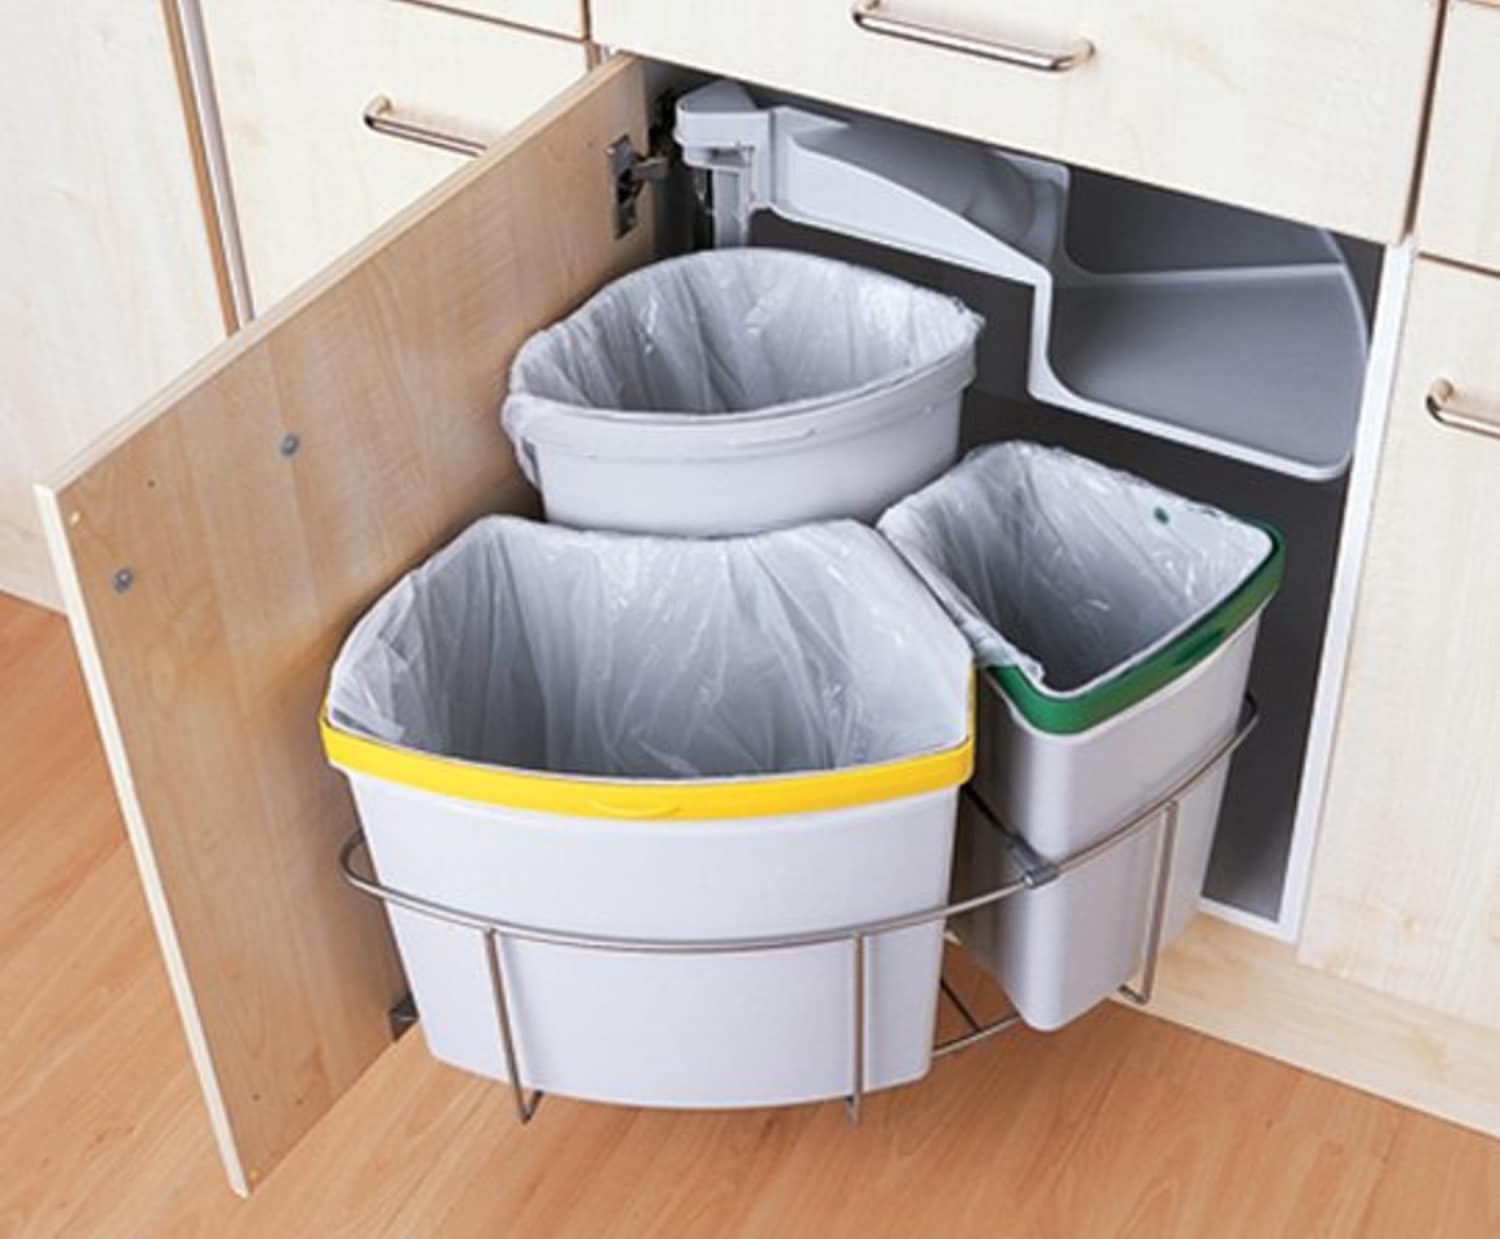 kitchen waste bins under sink